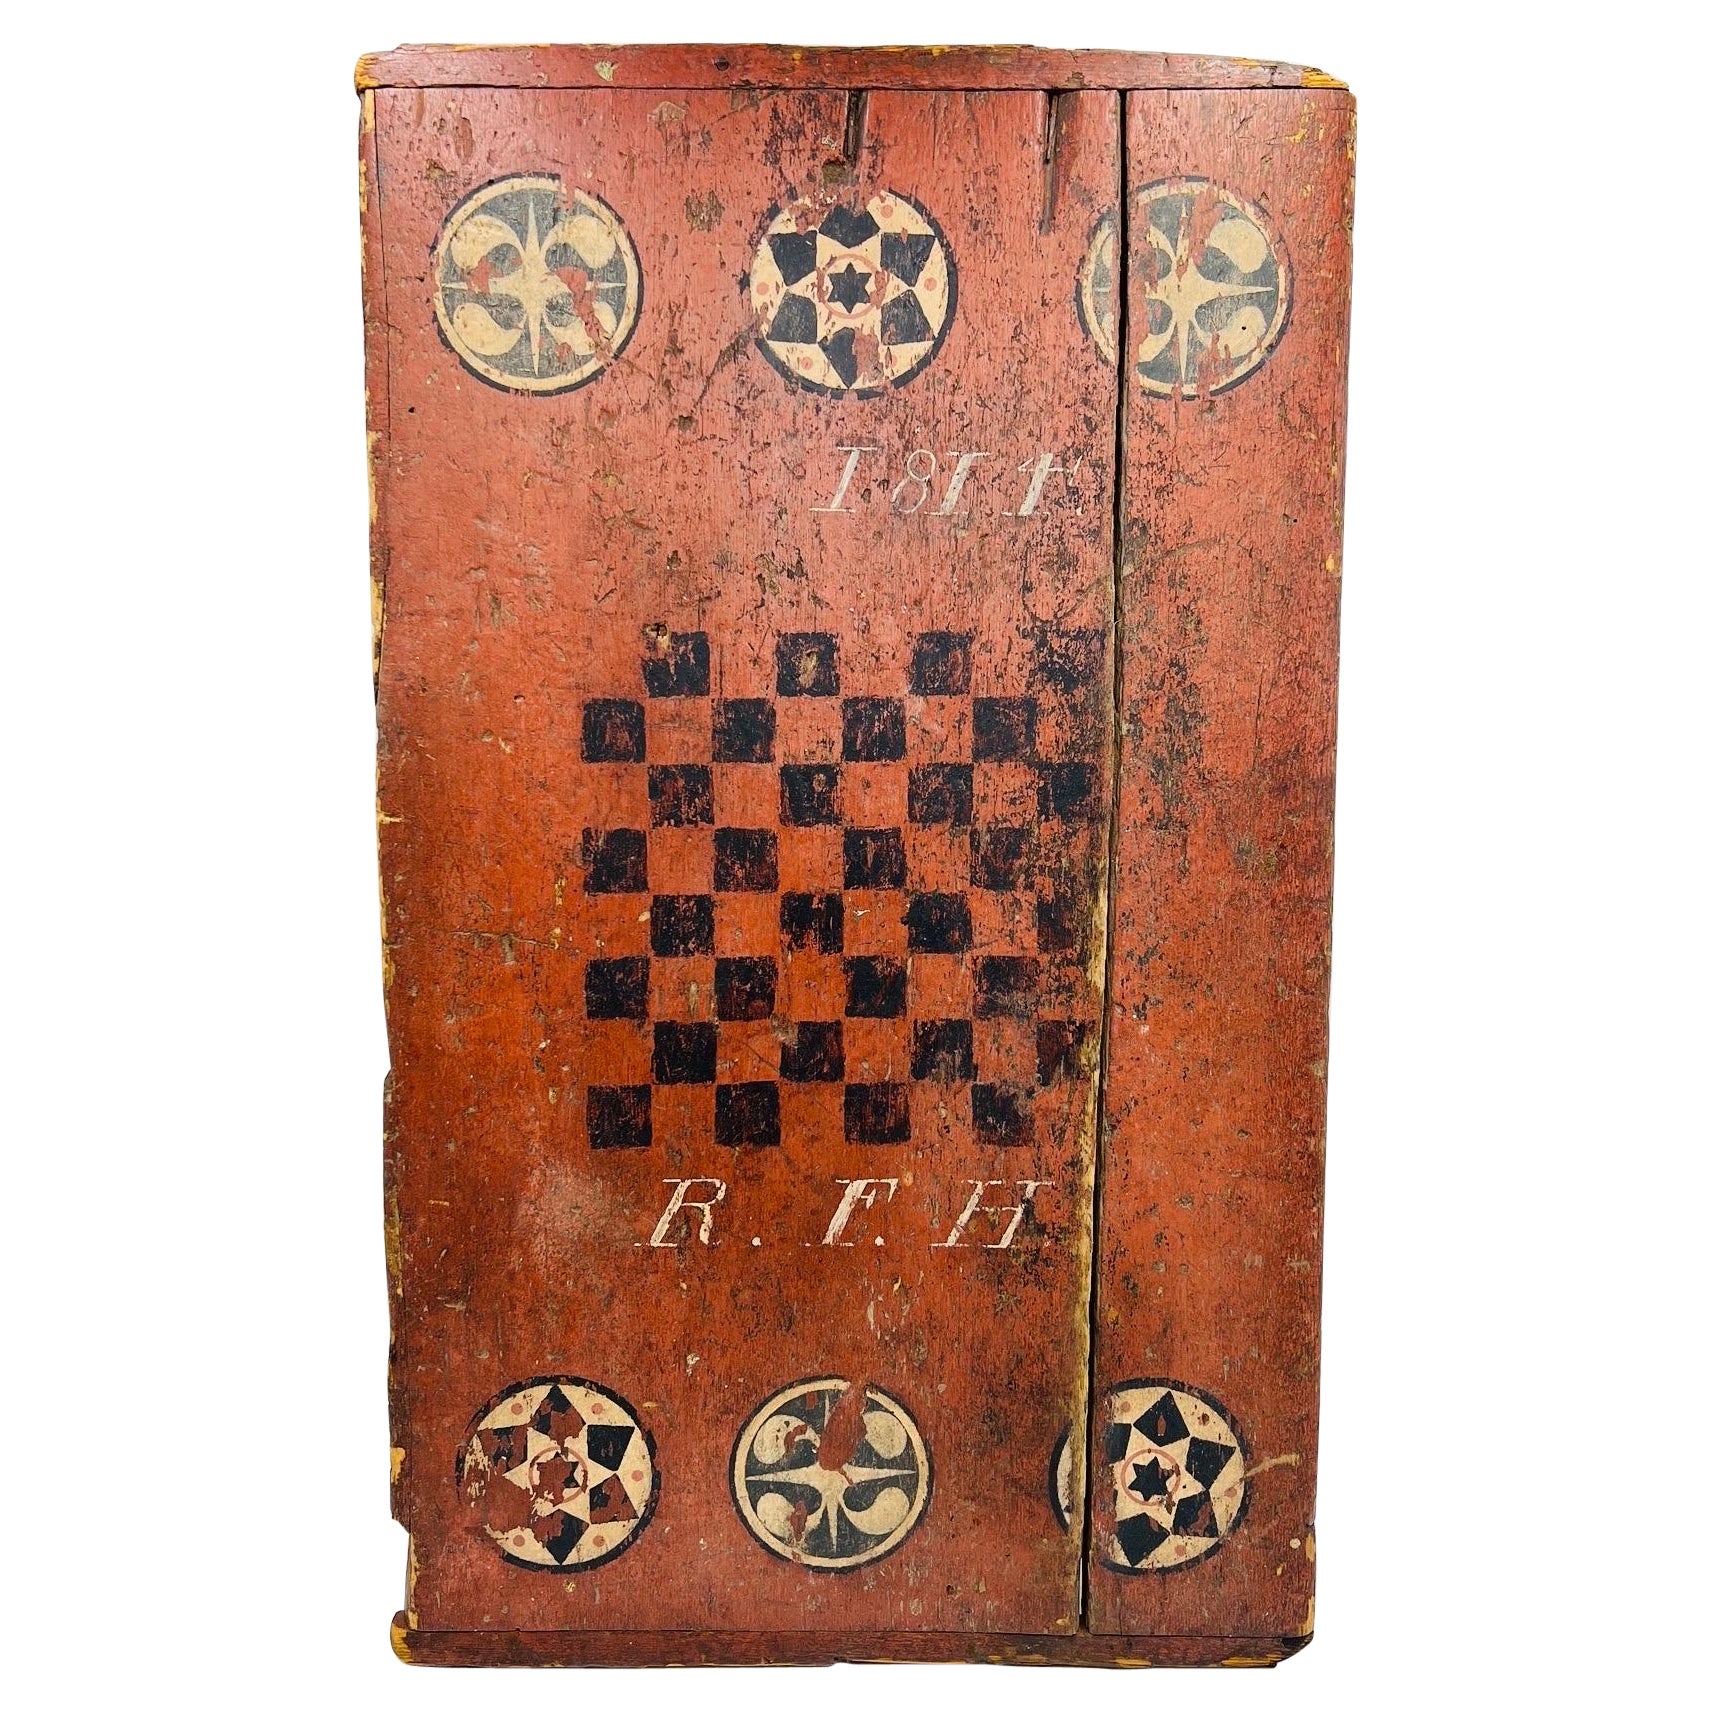 Rare Antique American Folk Art Primitive 1814 Checkers Game Board For Sale